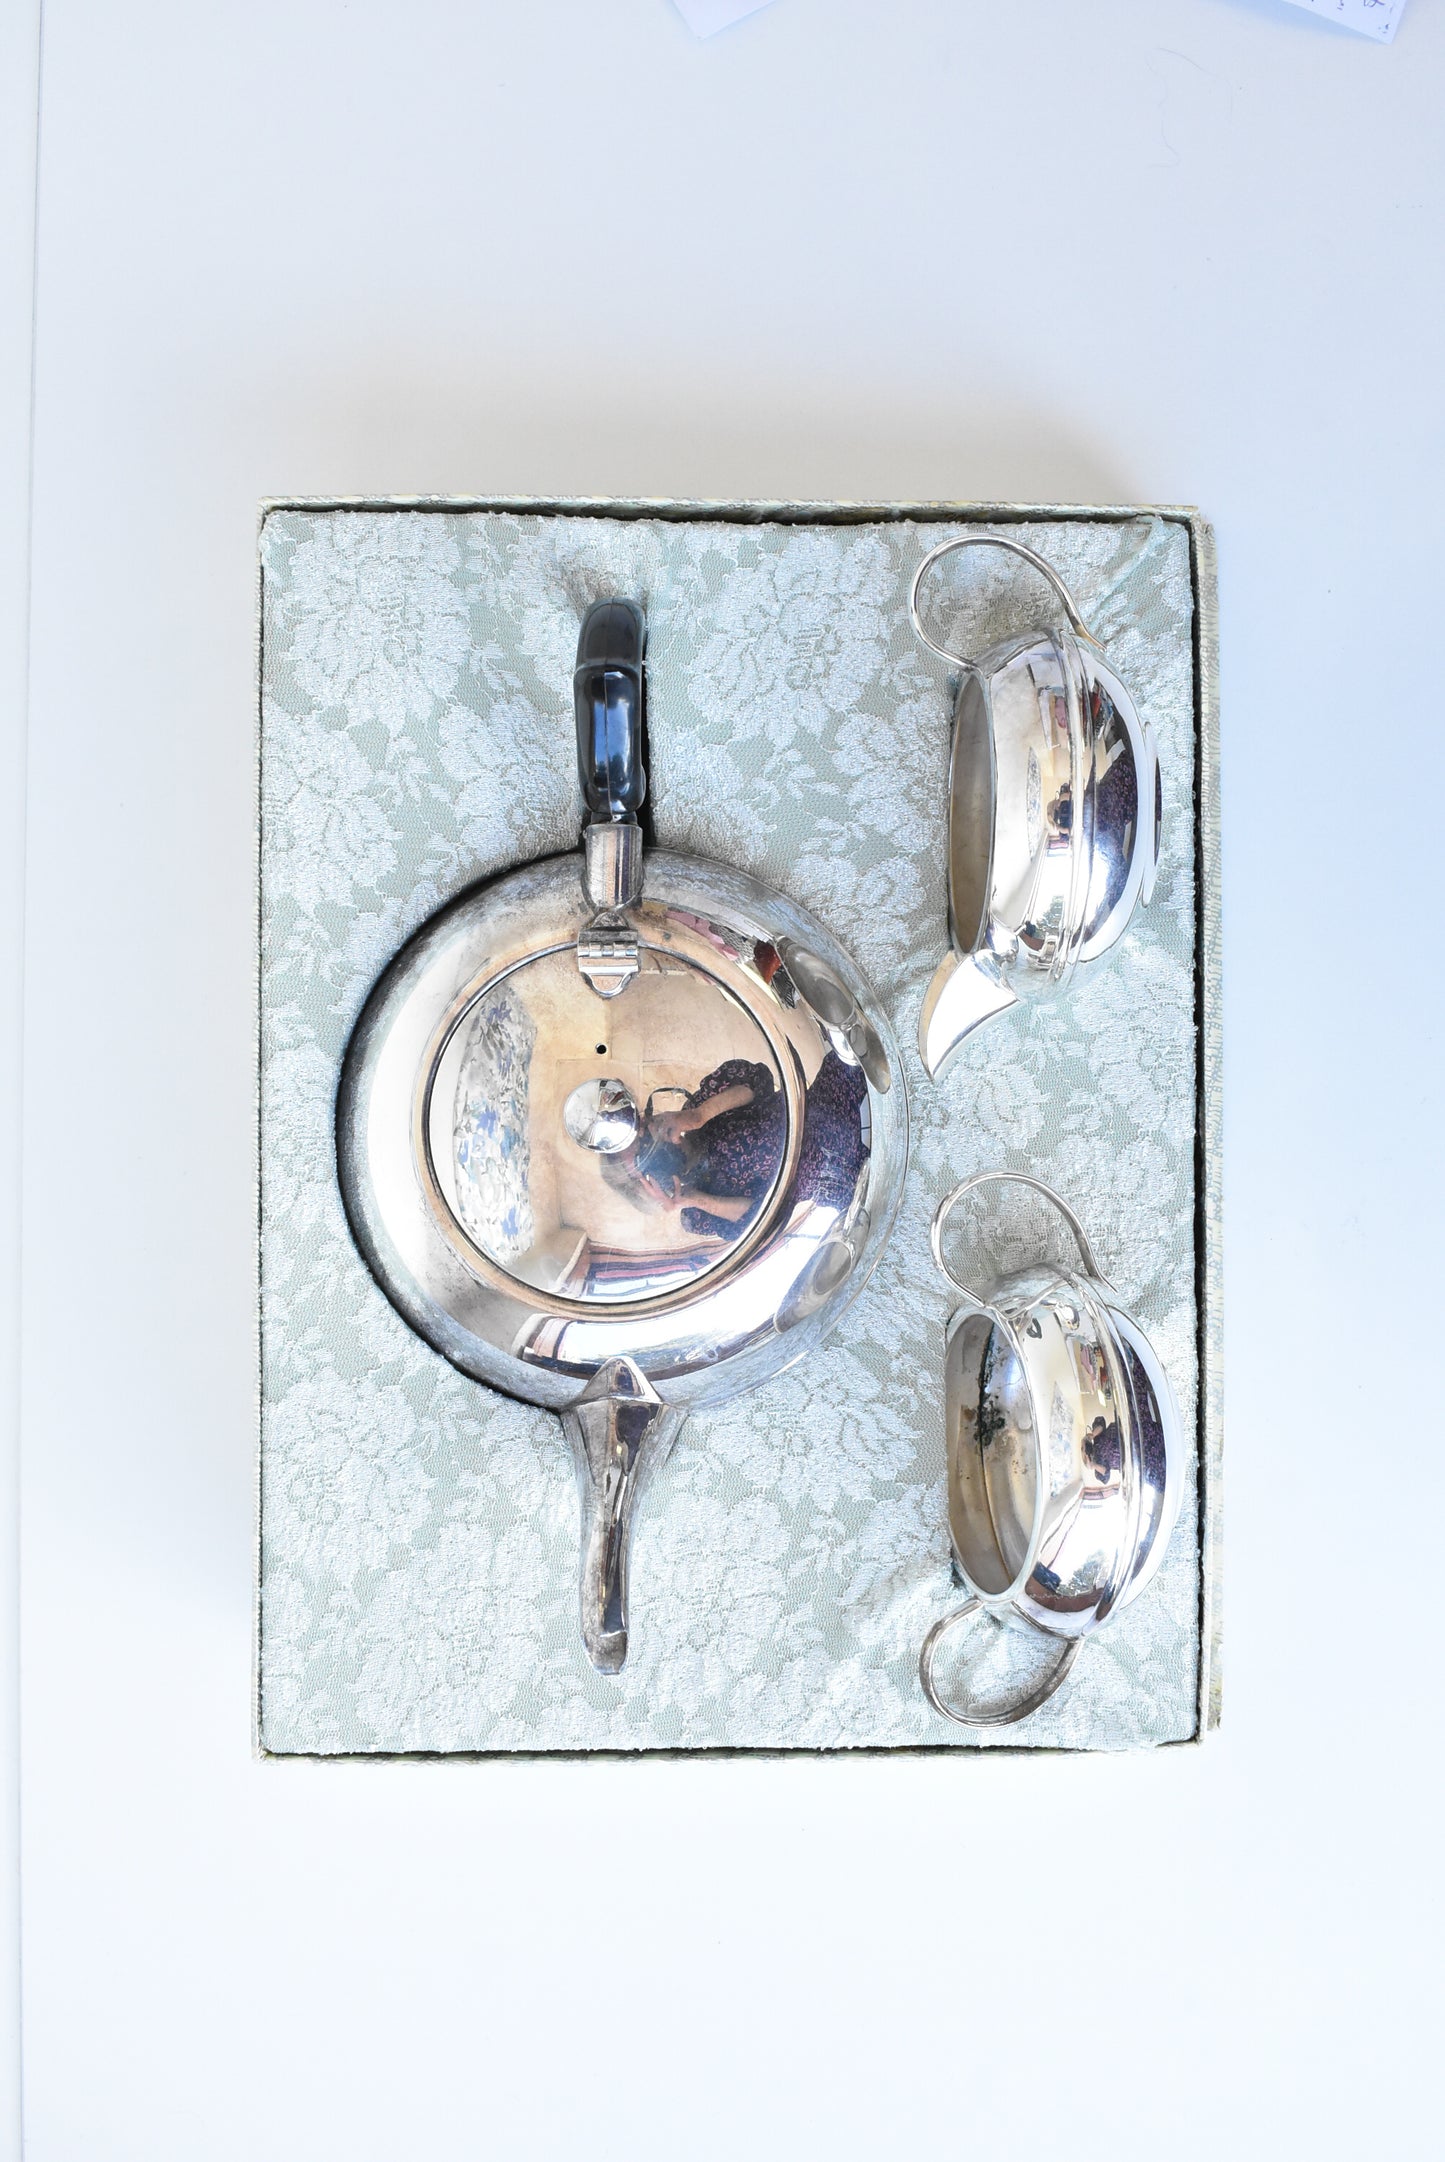 Vintage Lancaster electroplated silver tea set